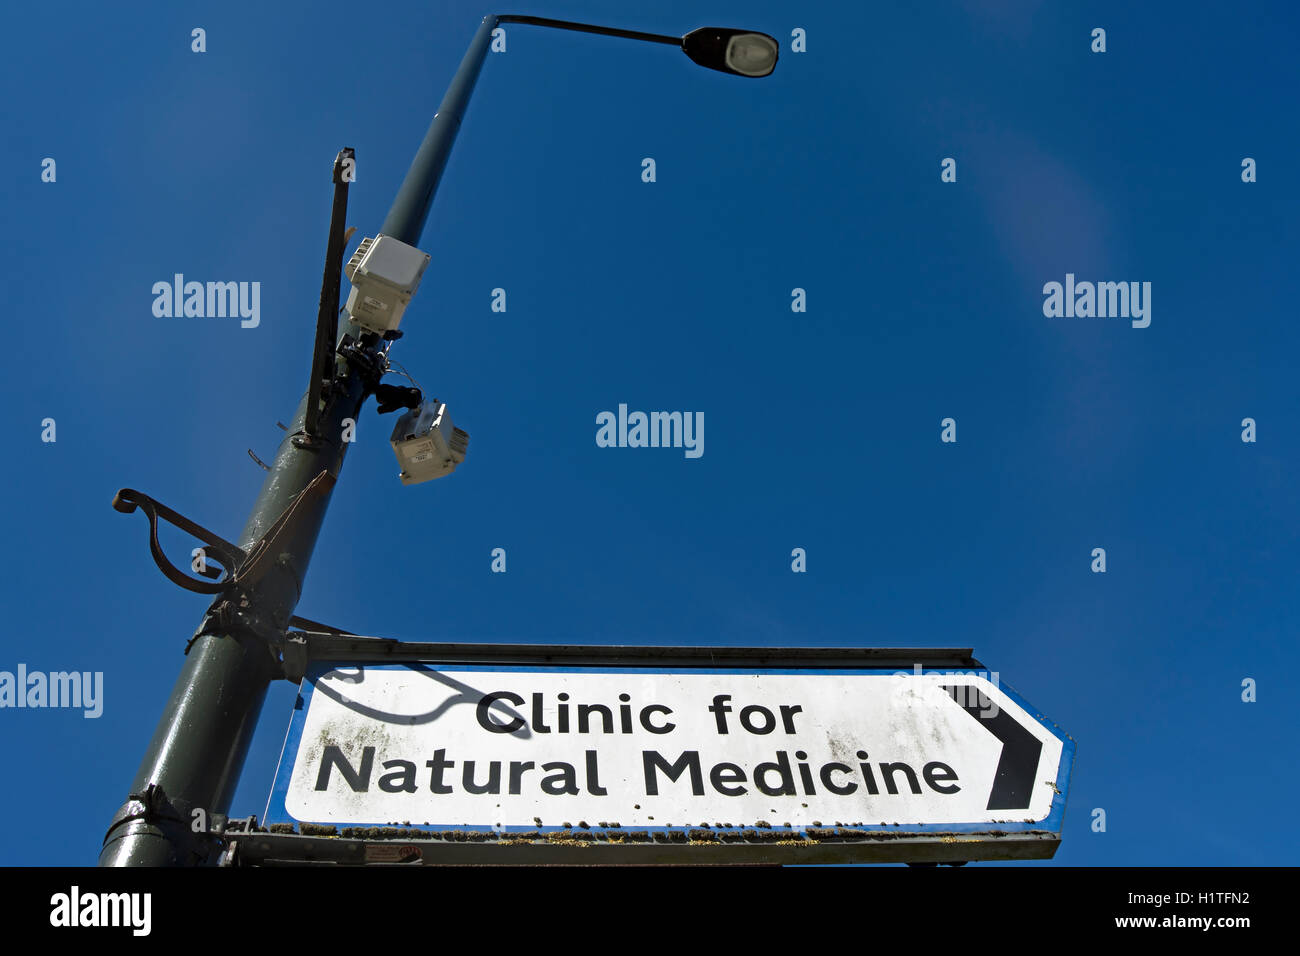 Signe pointant vers la droite pour la clinique de médecine naturelle, également connu sous le nom de clinique de Wimbledon et basé à Wimbledon, Londres, Angleterre Banque D'Images